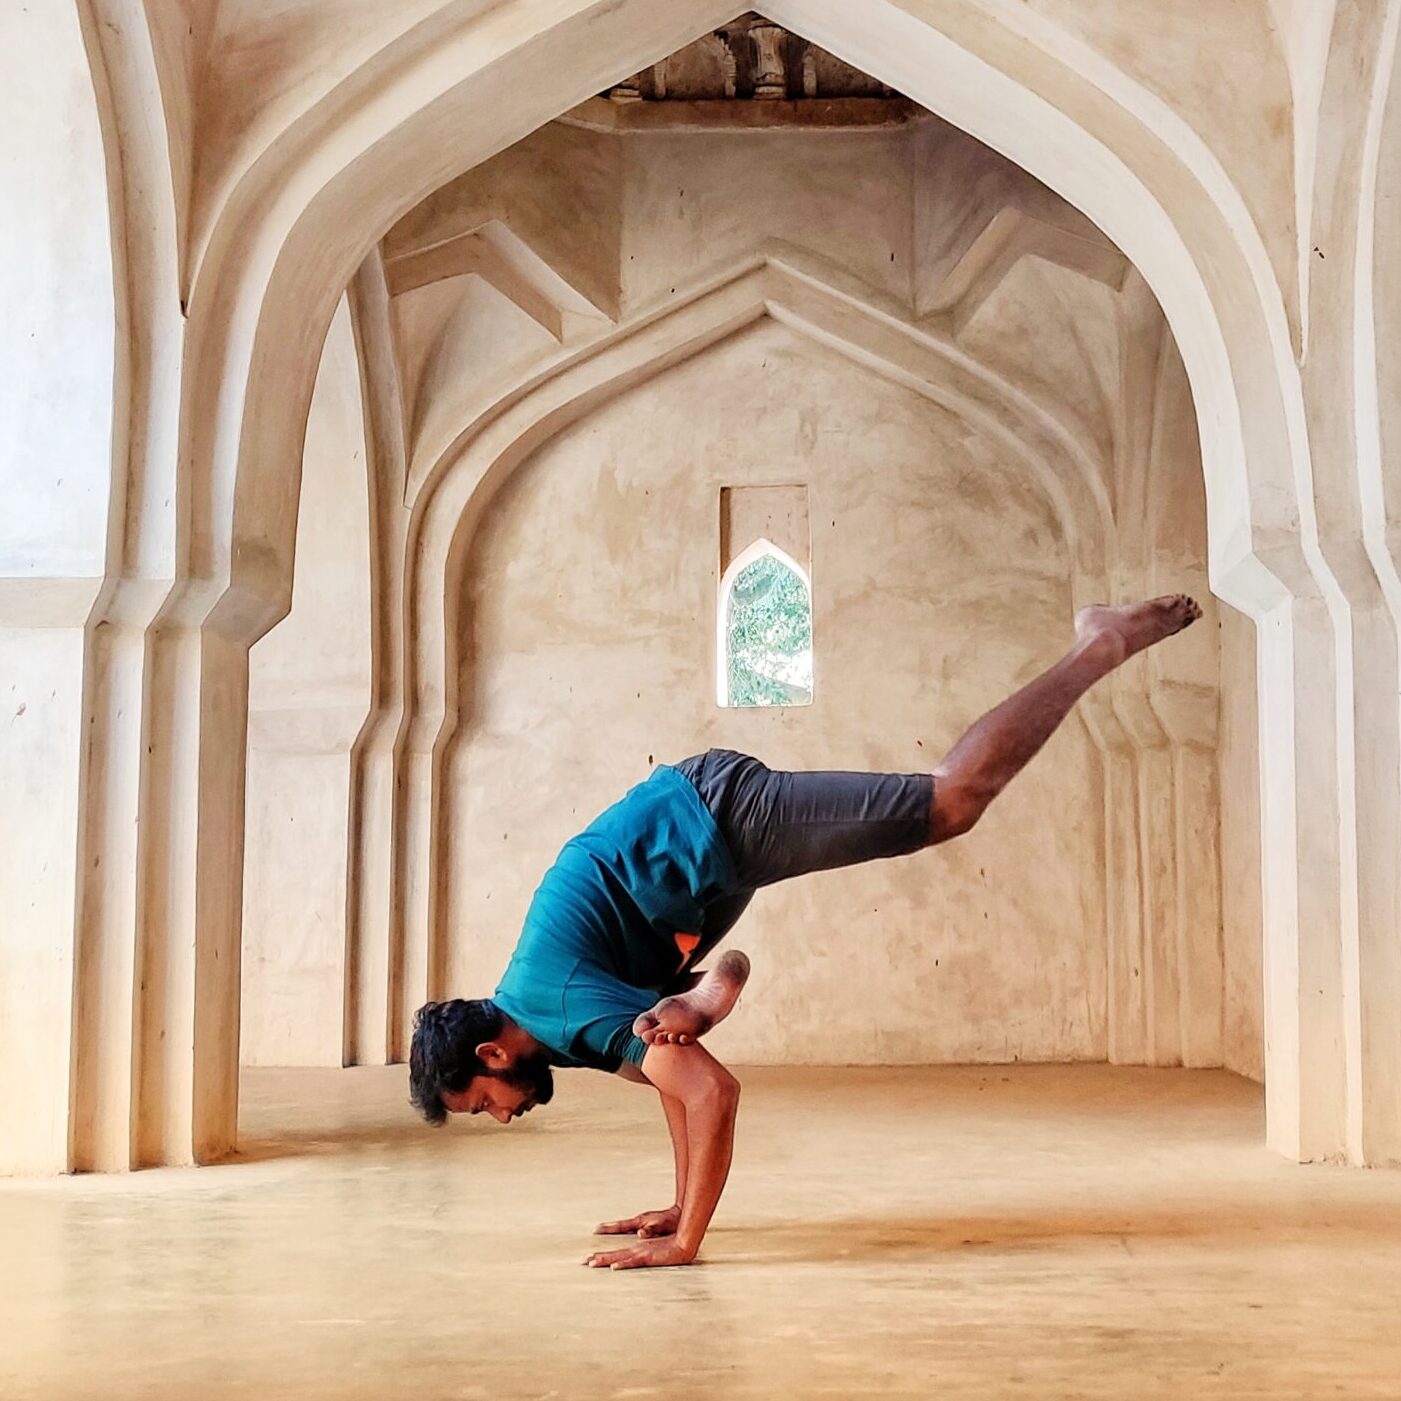 “yogah karmasu kaushalam “ - excellence in work is yoga